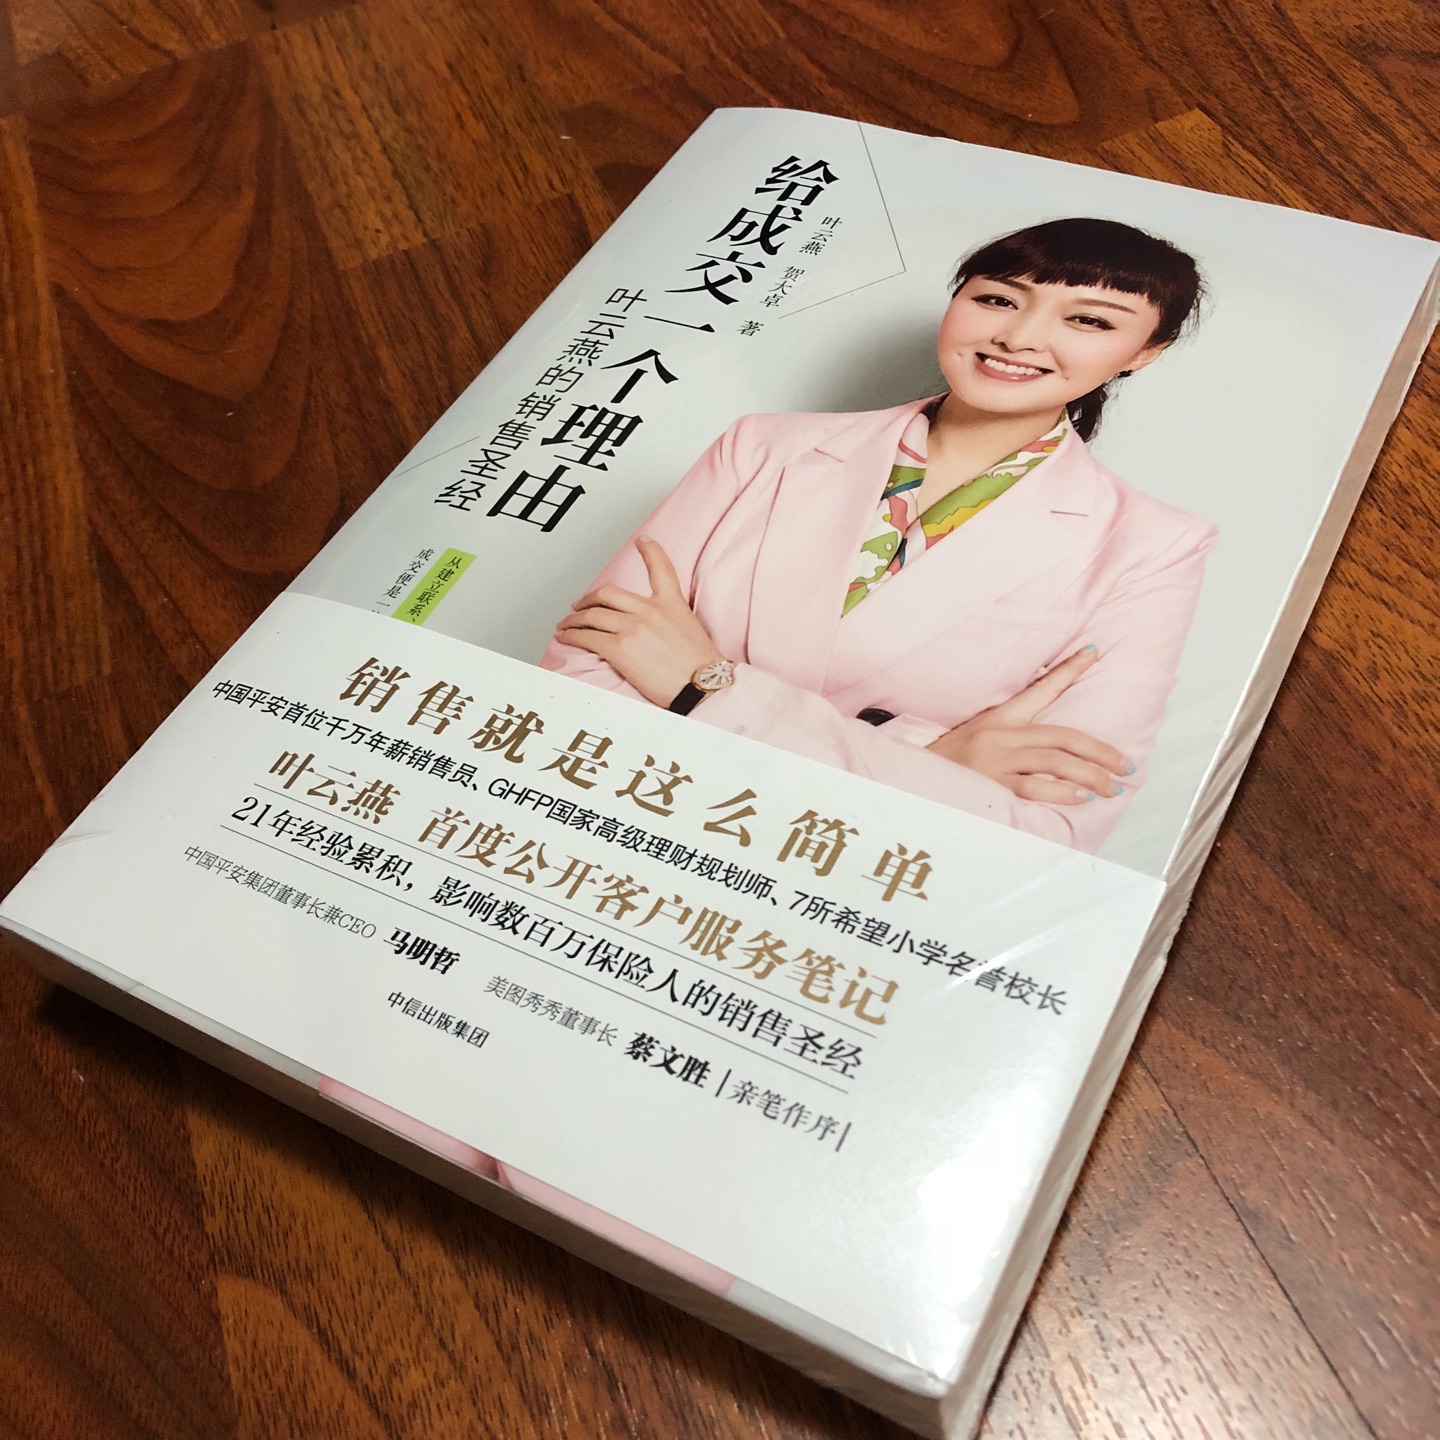 保险女王叶云燕的销售圣经，20年的从业经历确实很精彩